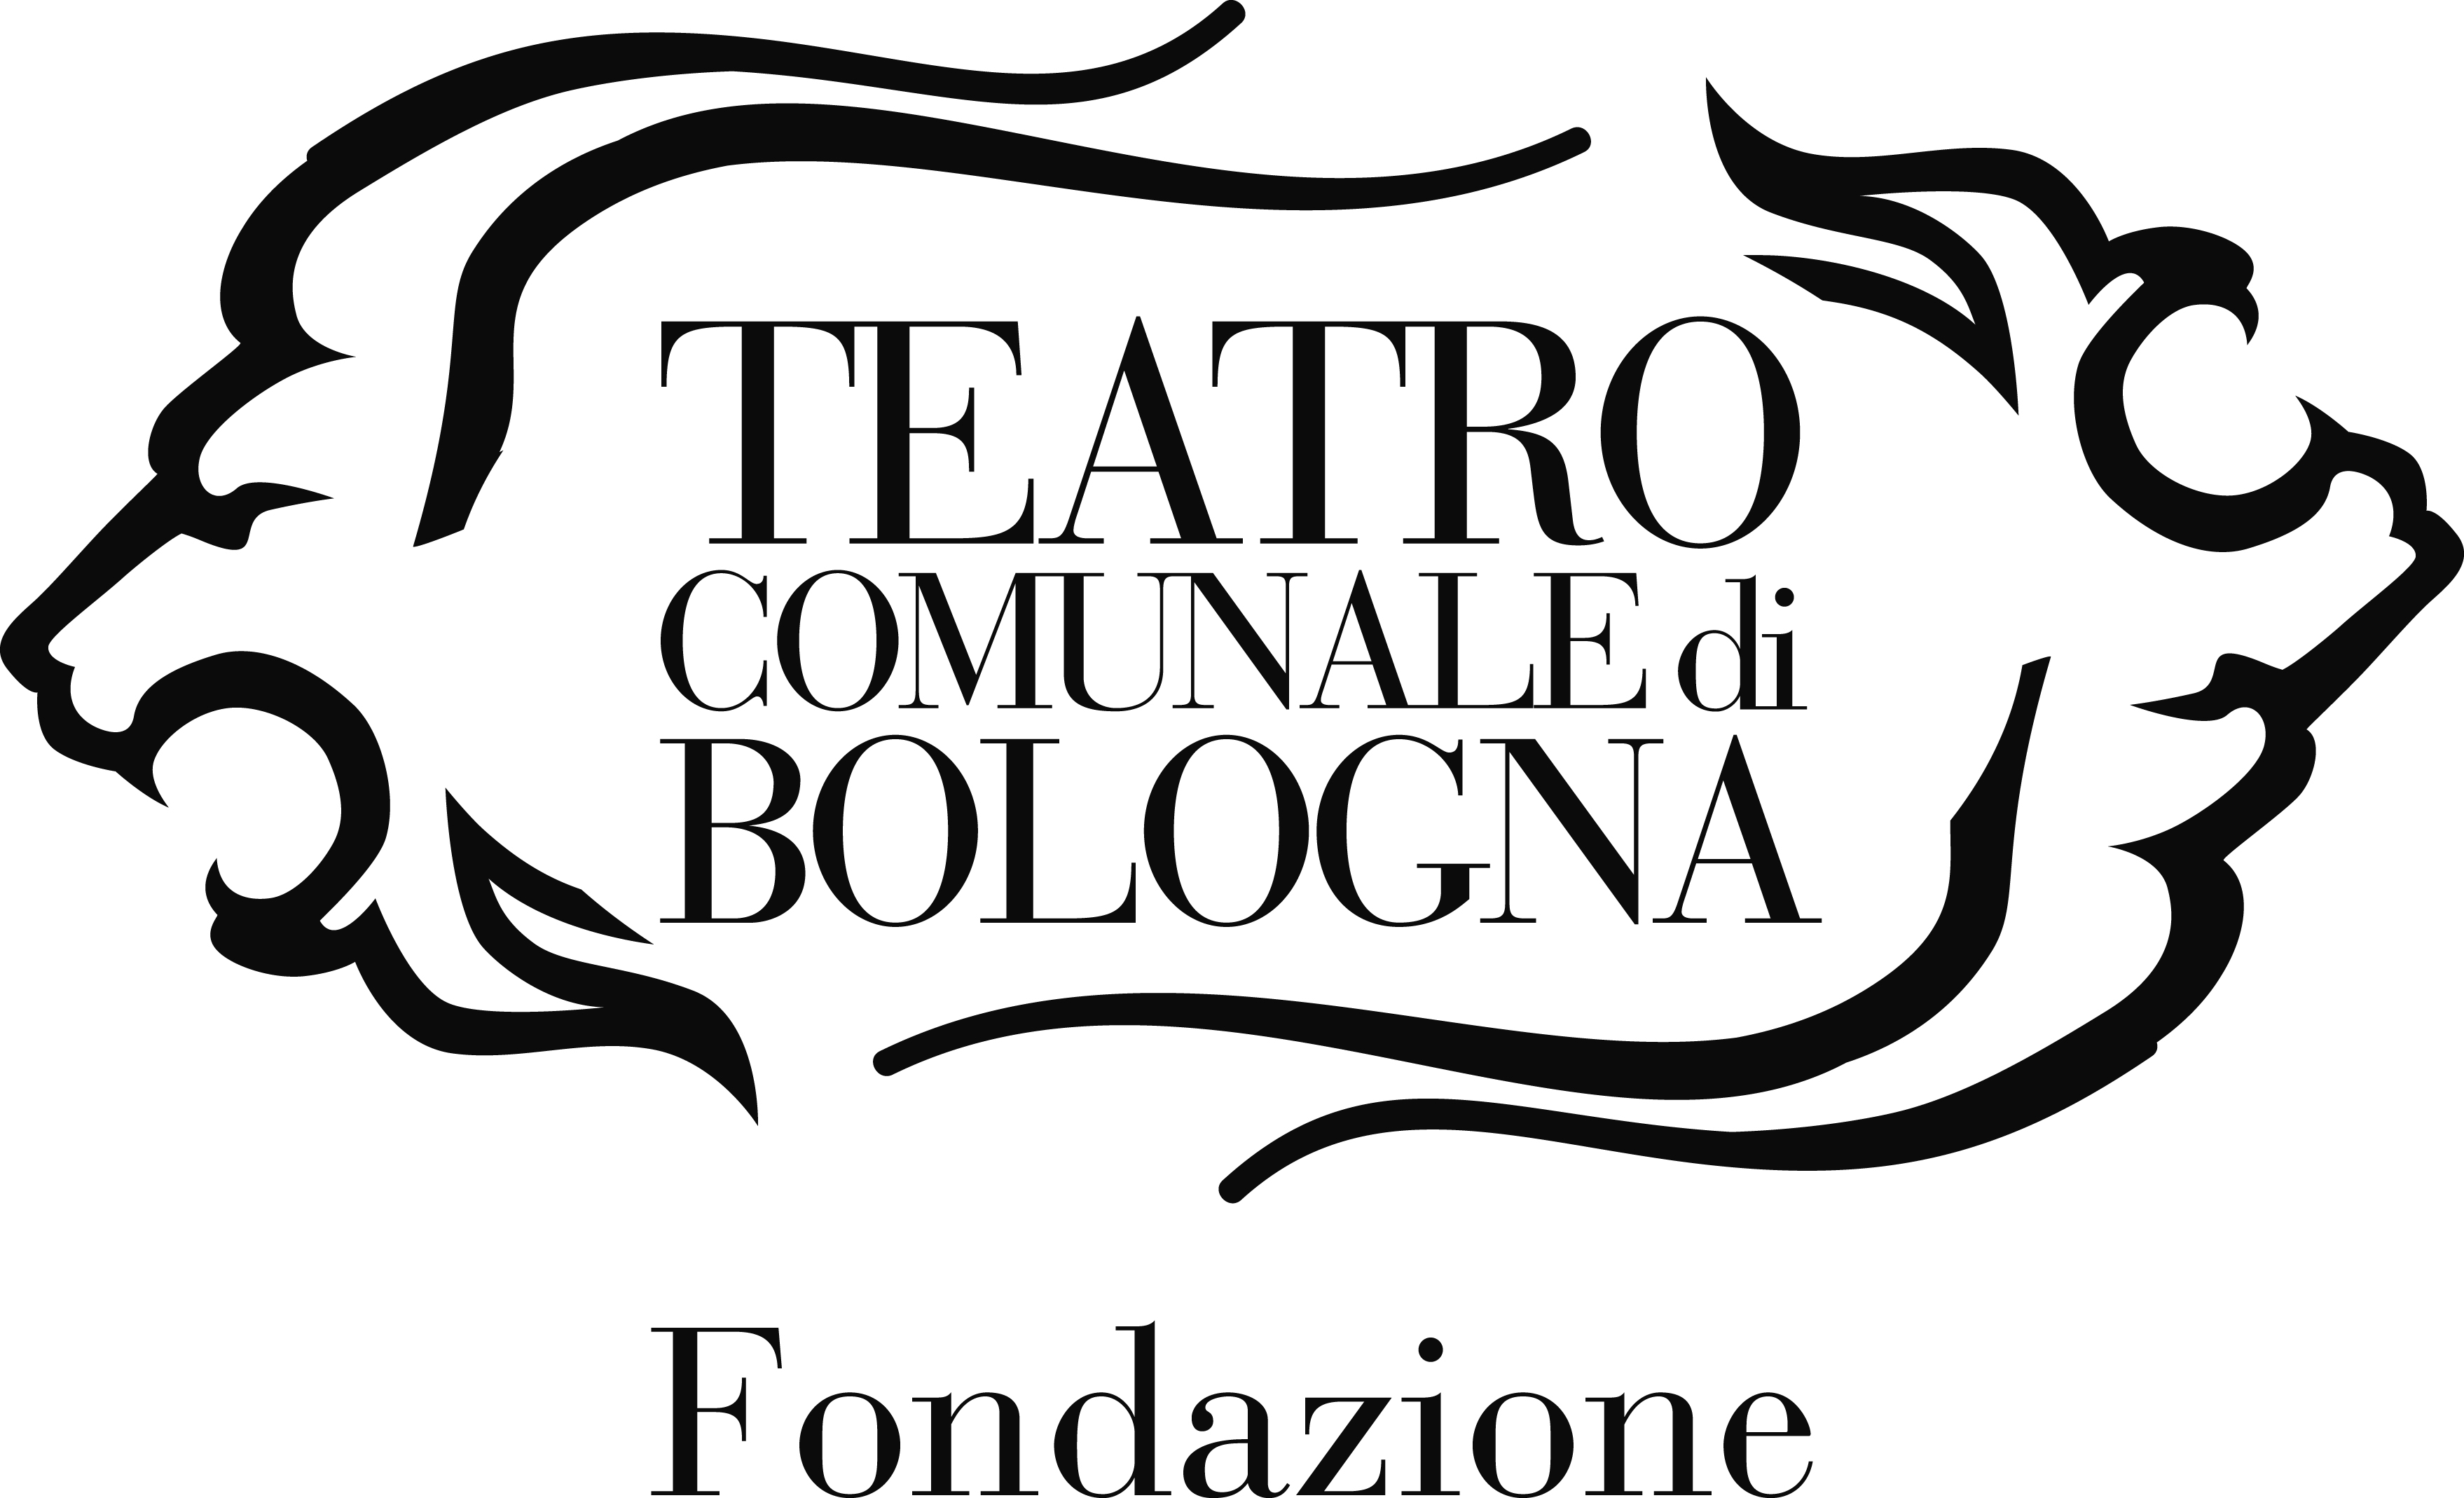 Teatro Comunale, Bologna